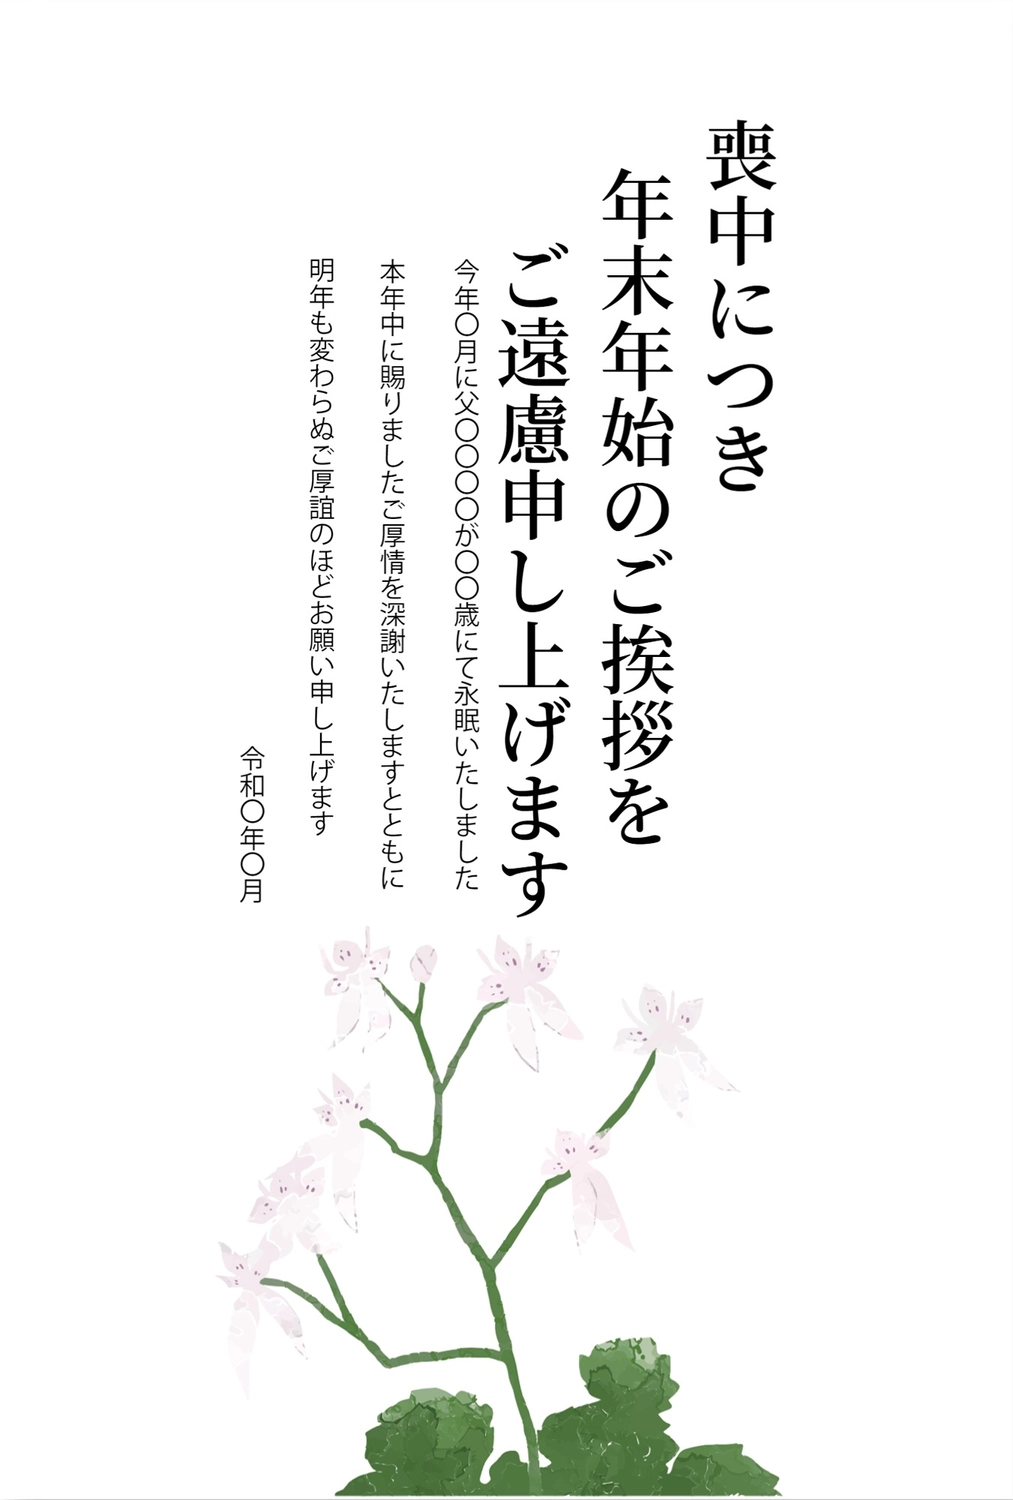 手描き花の喪中はがき, 흰 꽃, 永眠, お悔み, 상중 엽서 템플릿